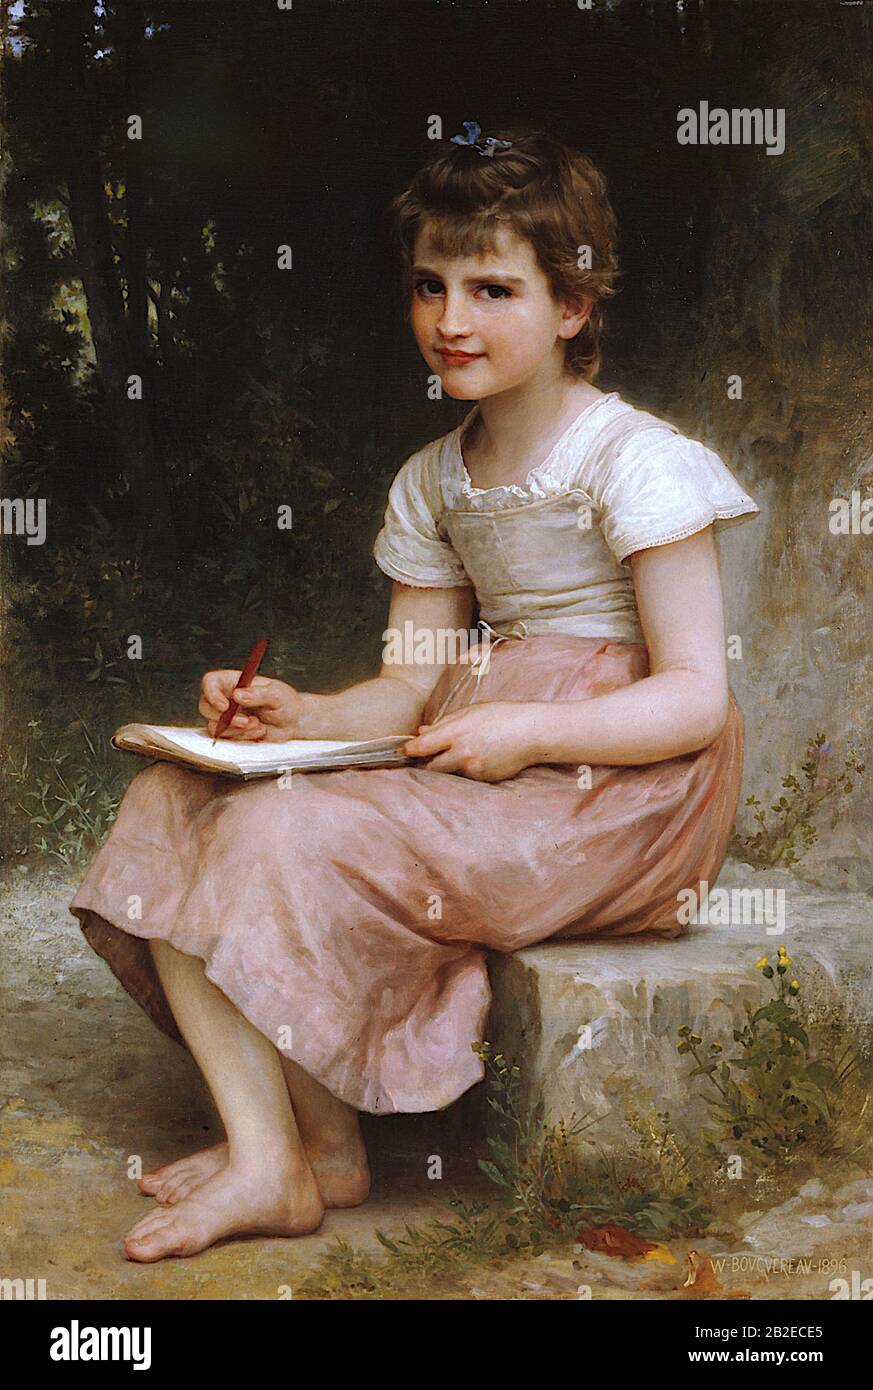 A Calling (1896) pittura accademica francese di William-Adolphe Bouguereau - altissima risoluzione e qualità dell'immagine Foto Stock